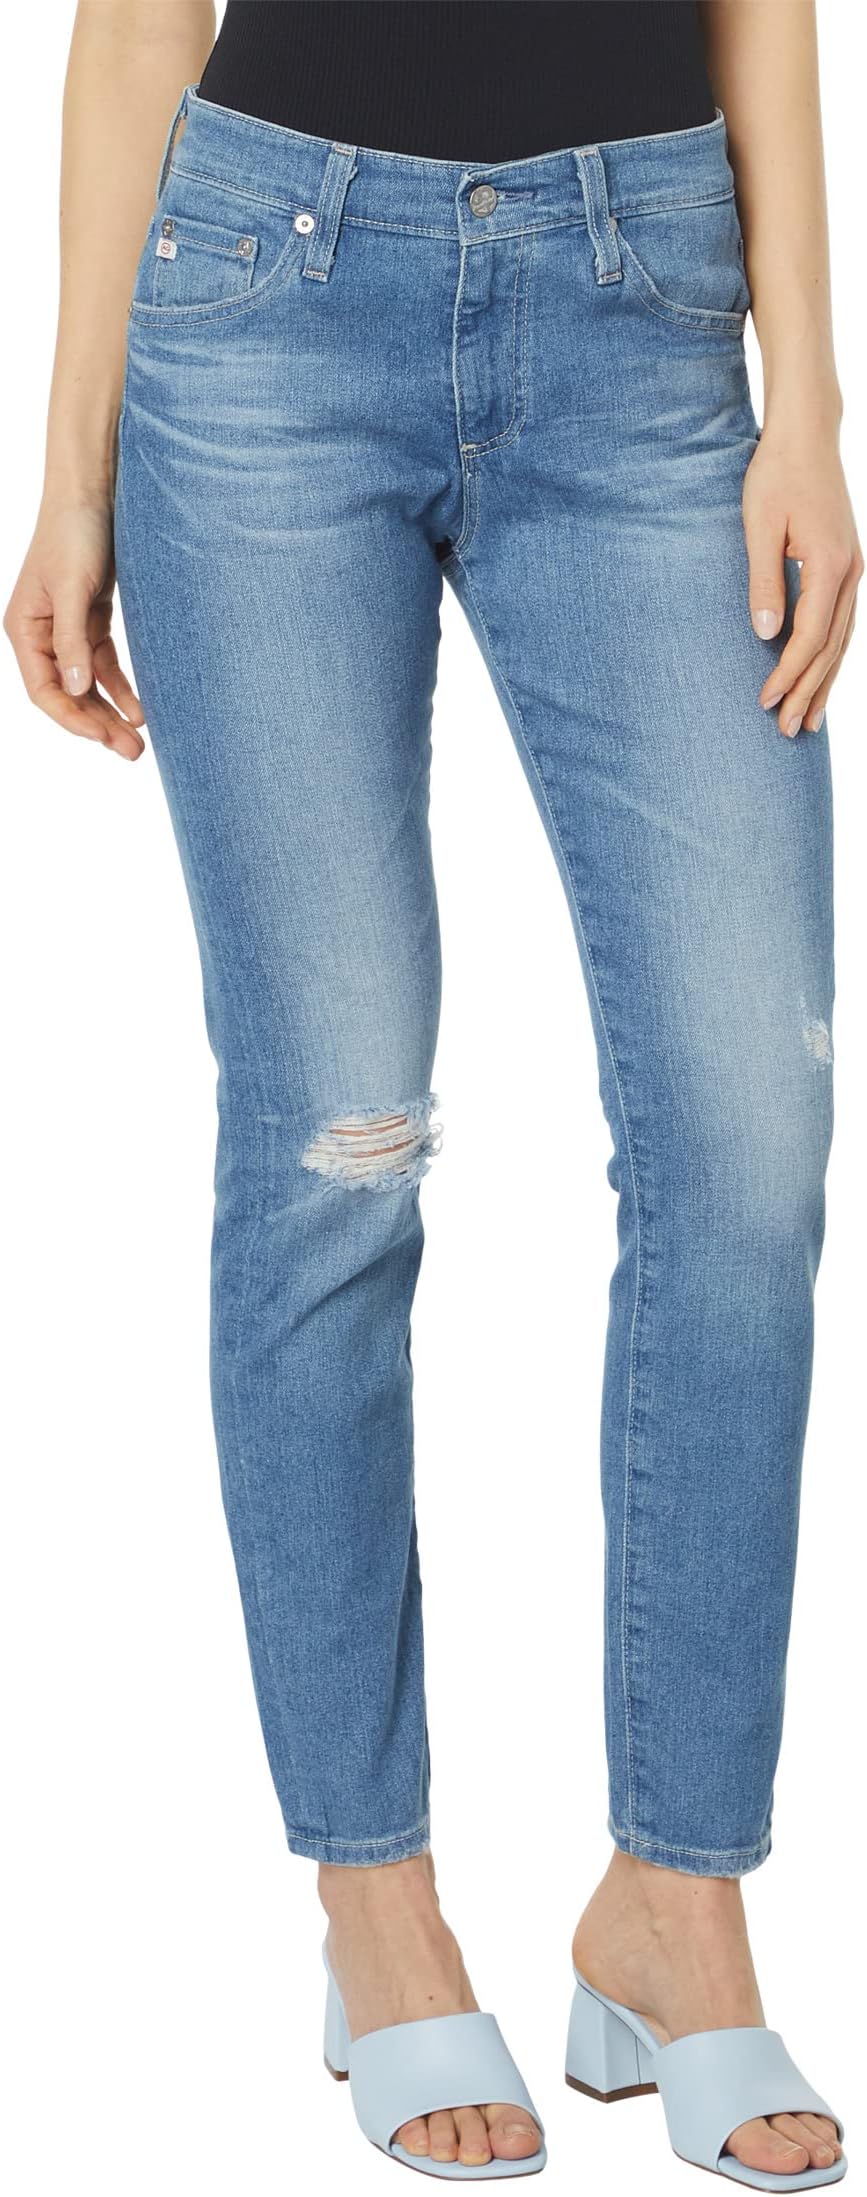 Джинсы Farrah Ankle High-Rise Skinny in 18 Years Santa Fe AG Jeans, цвет 18 Years Santa Fe